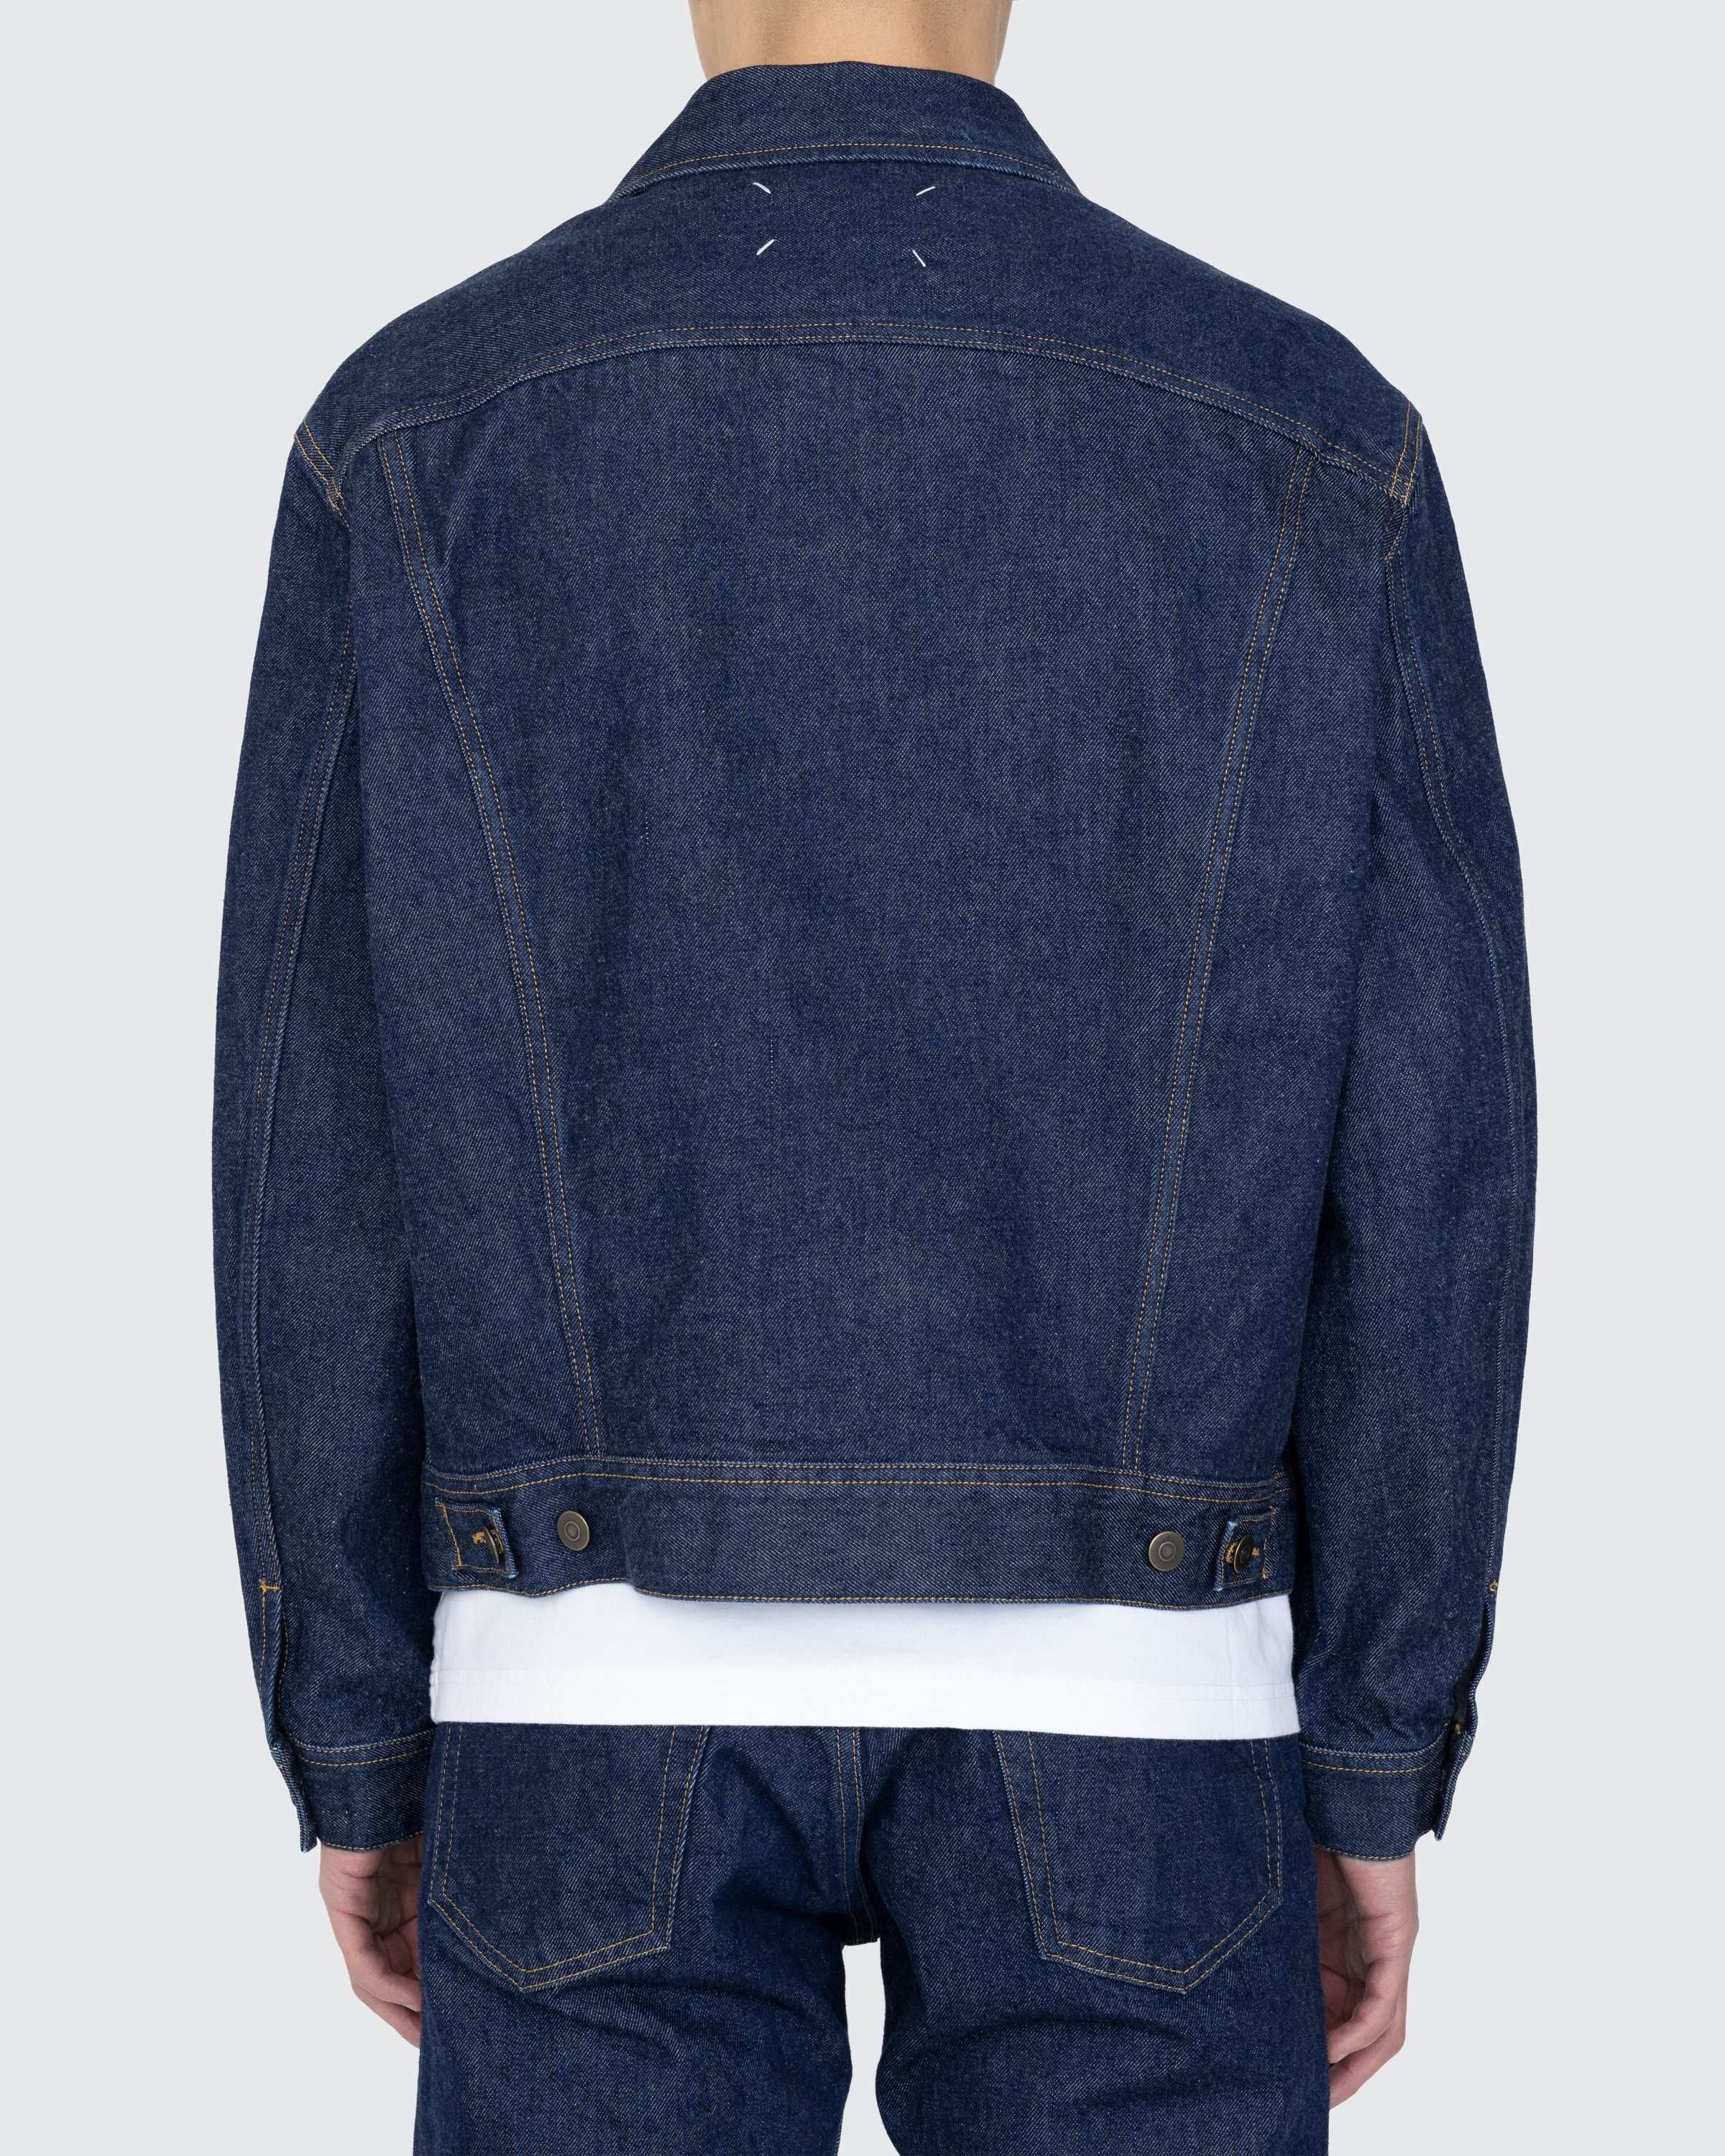 Maison Margiela – Denim Jacket Indigo - Denim Jackets - Blue - Image 5